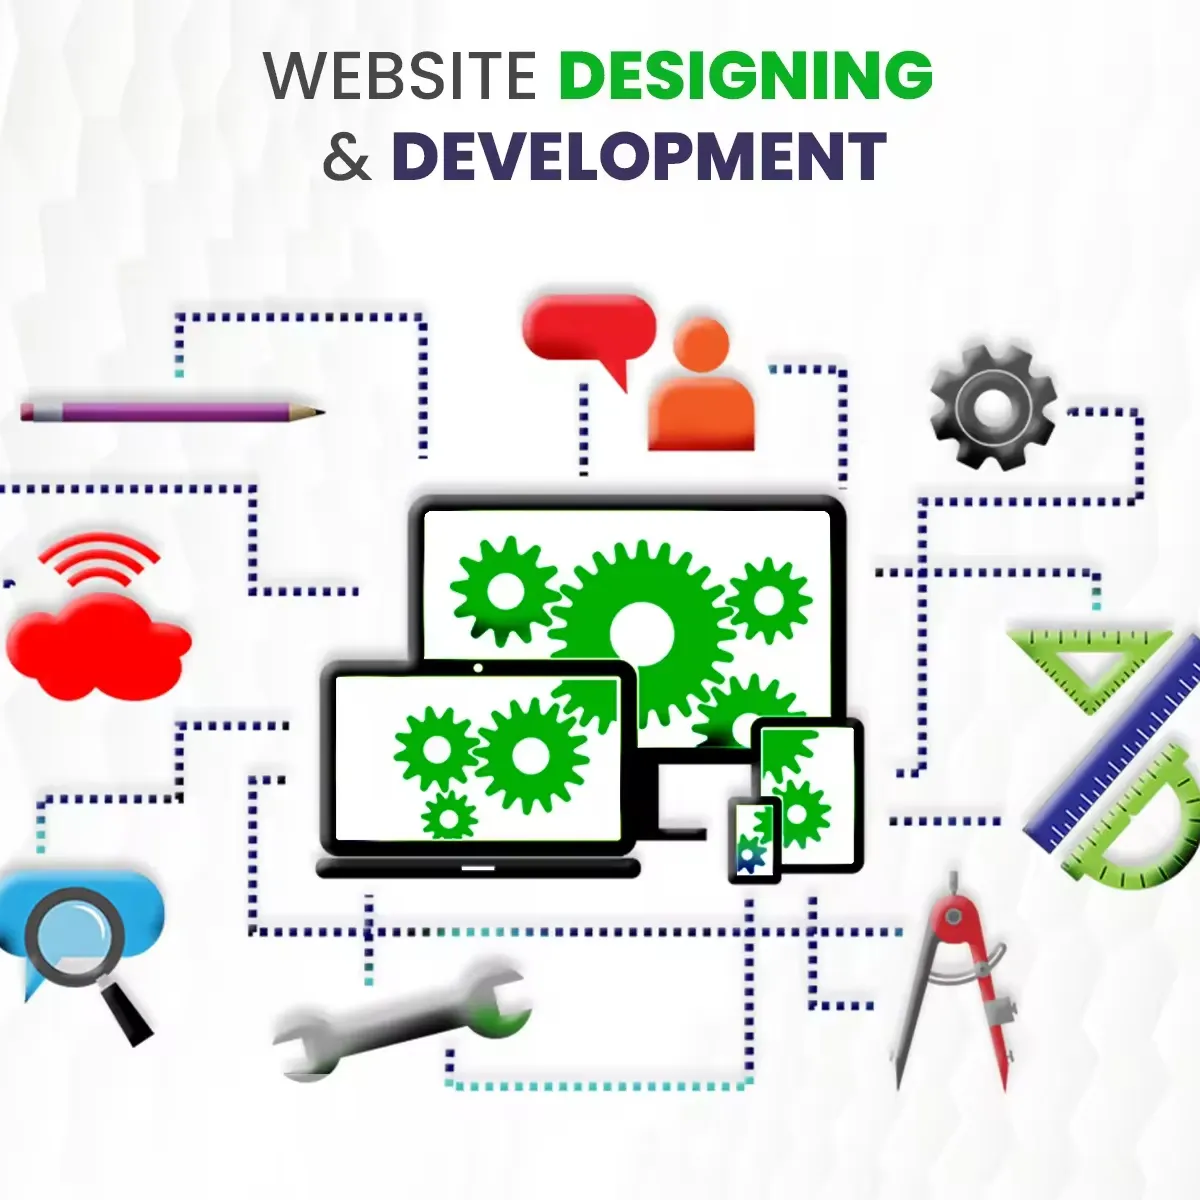 Serviços de Design de Websites | Serviços de Desenvolvimento Web Profissional |